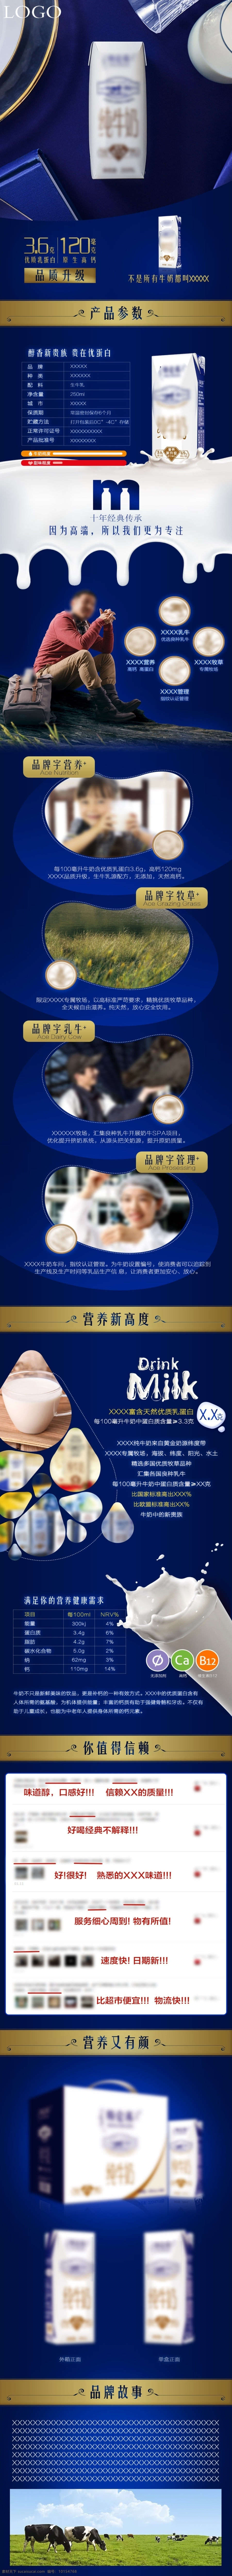 质感 大牌 牛奶 酸奶 乳制品 美食 高大 上 详情 页 详情页 大牌牛奶 奶杯 奶滴